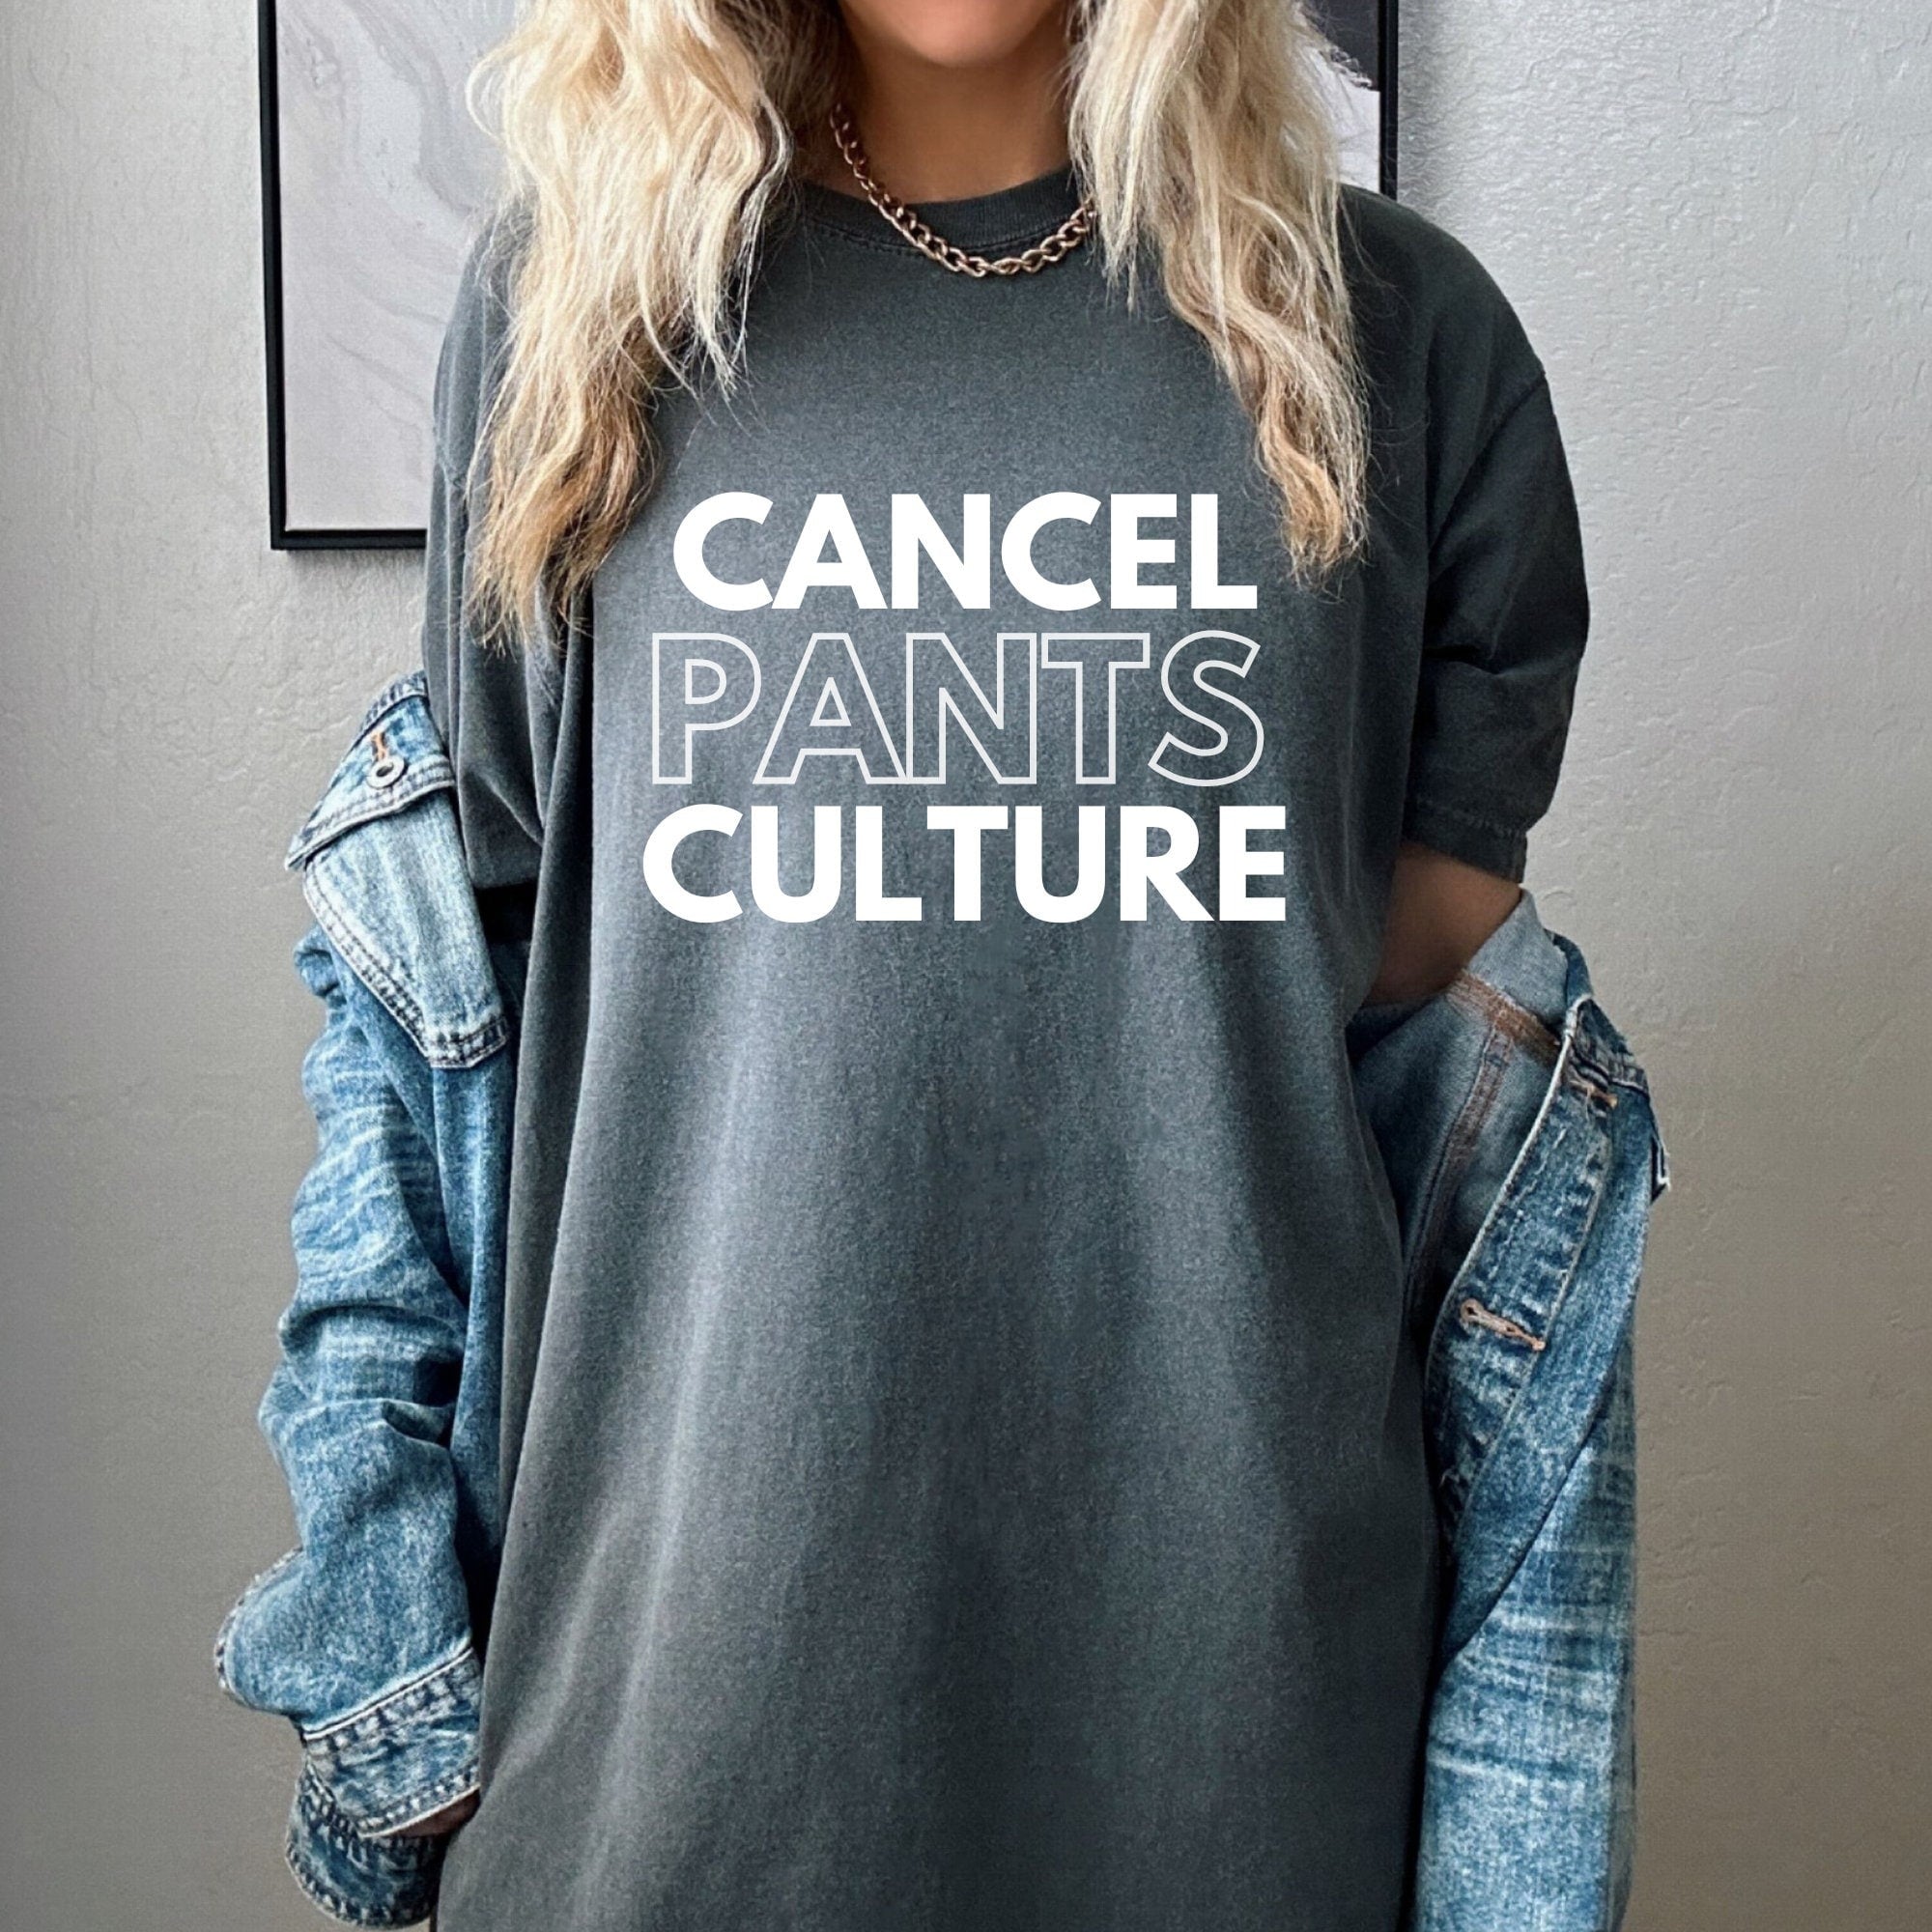 Cancel Pants Culture Tshirt